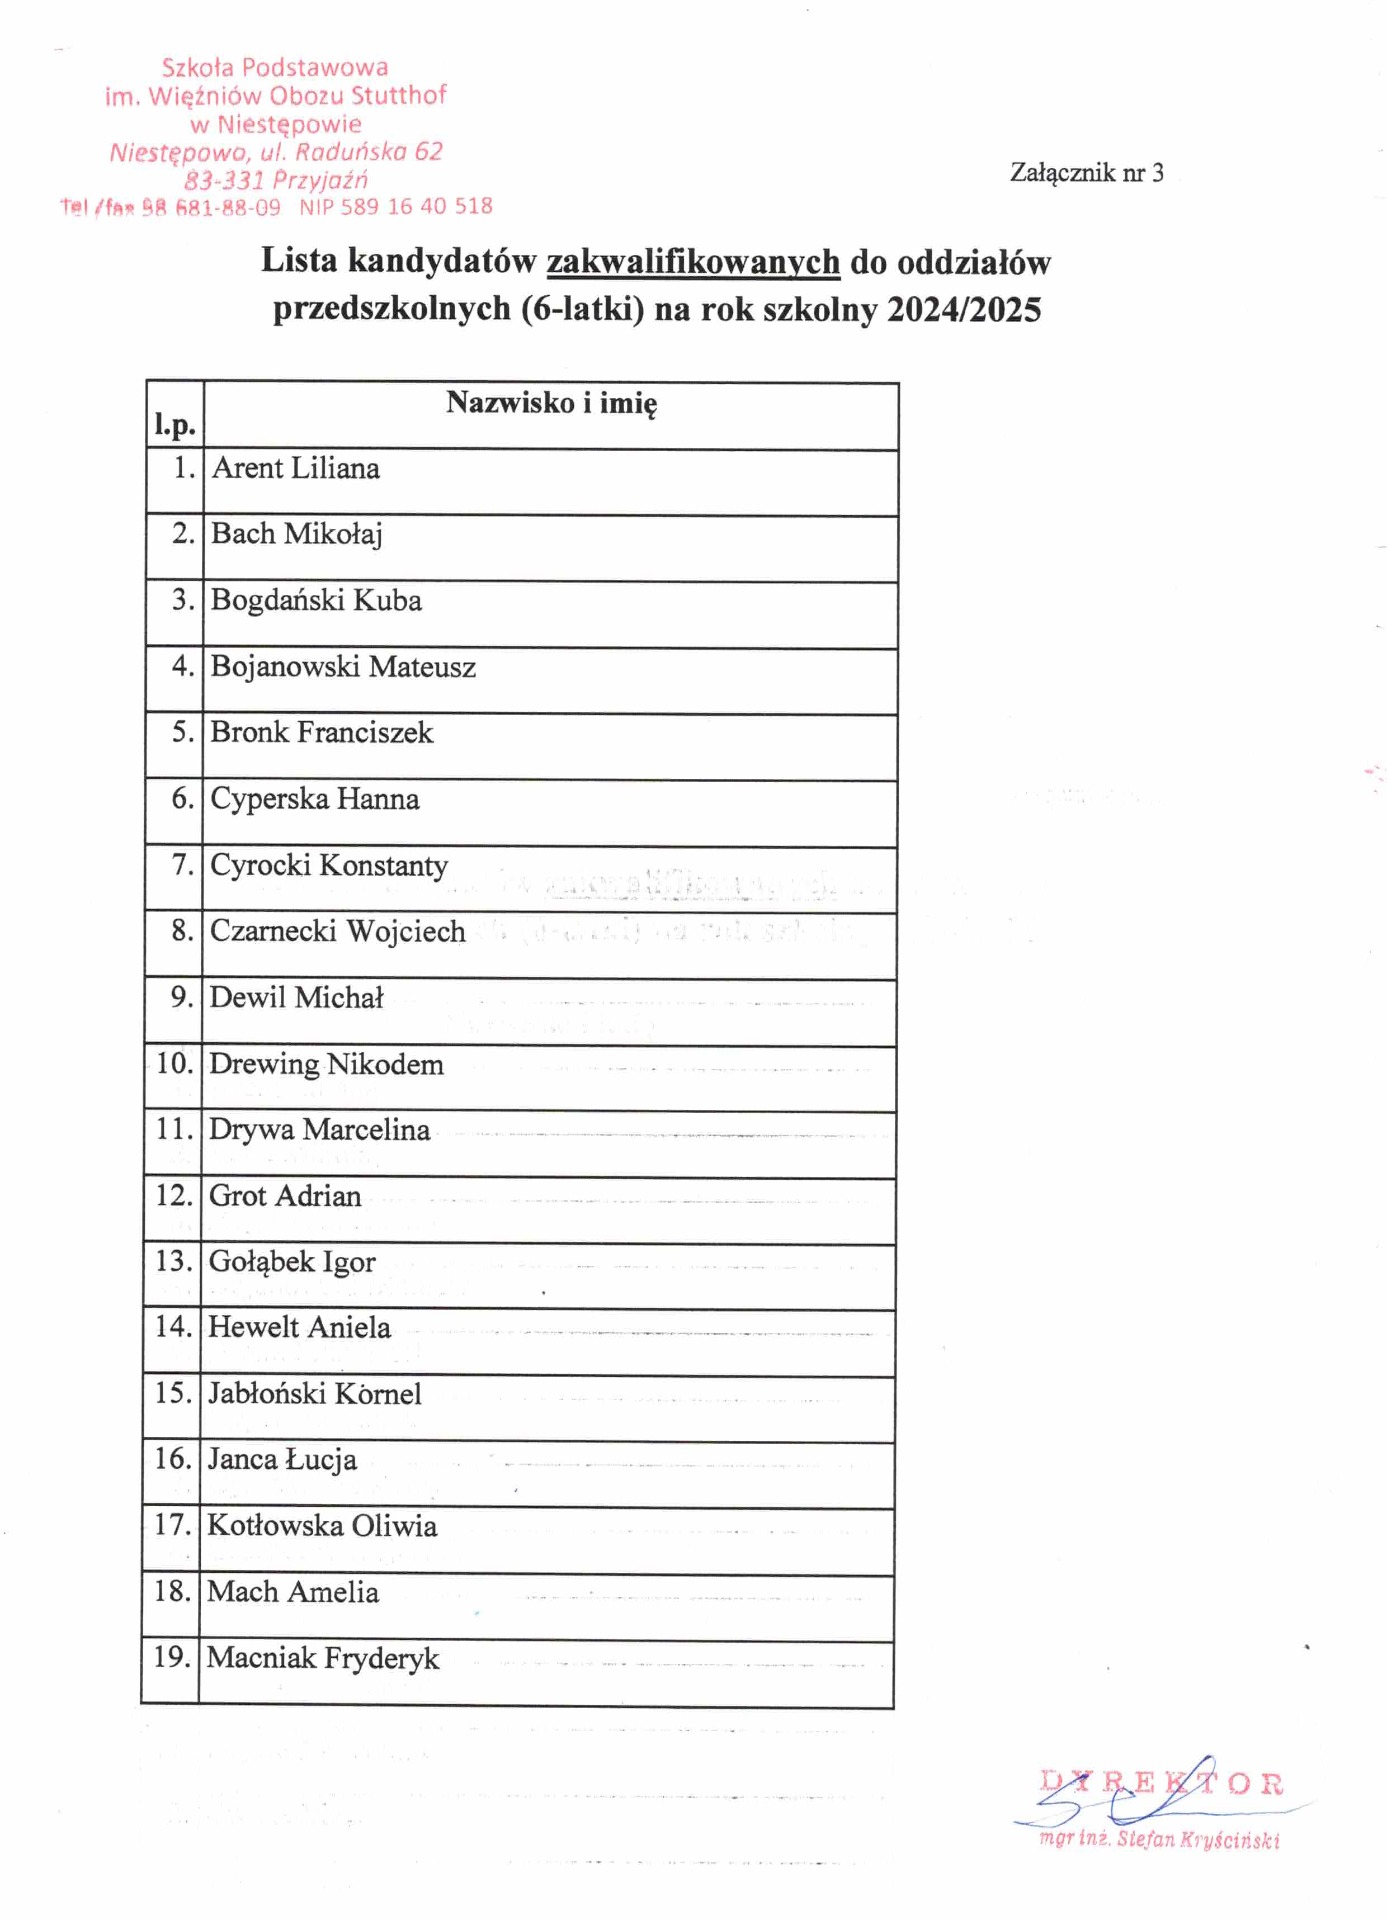 Lista dzieci zakwalifikowanych do oddziału przedszkolnego (6-latki) na rok szkolny 2024/2025